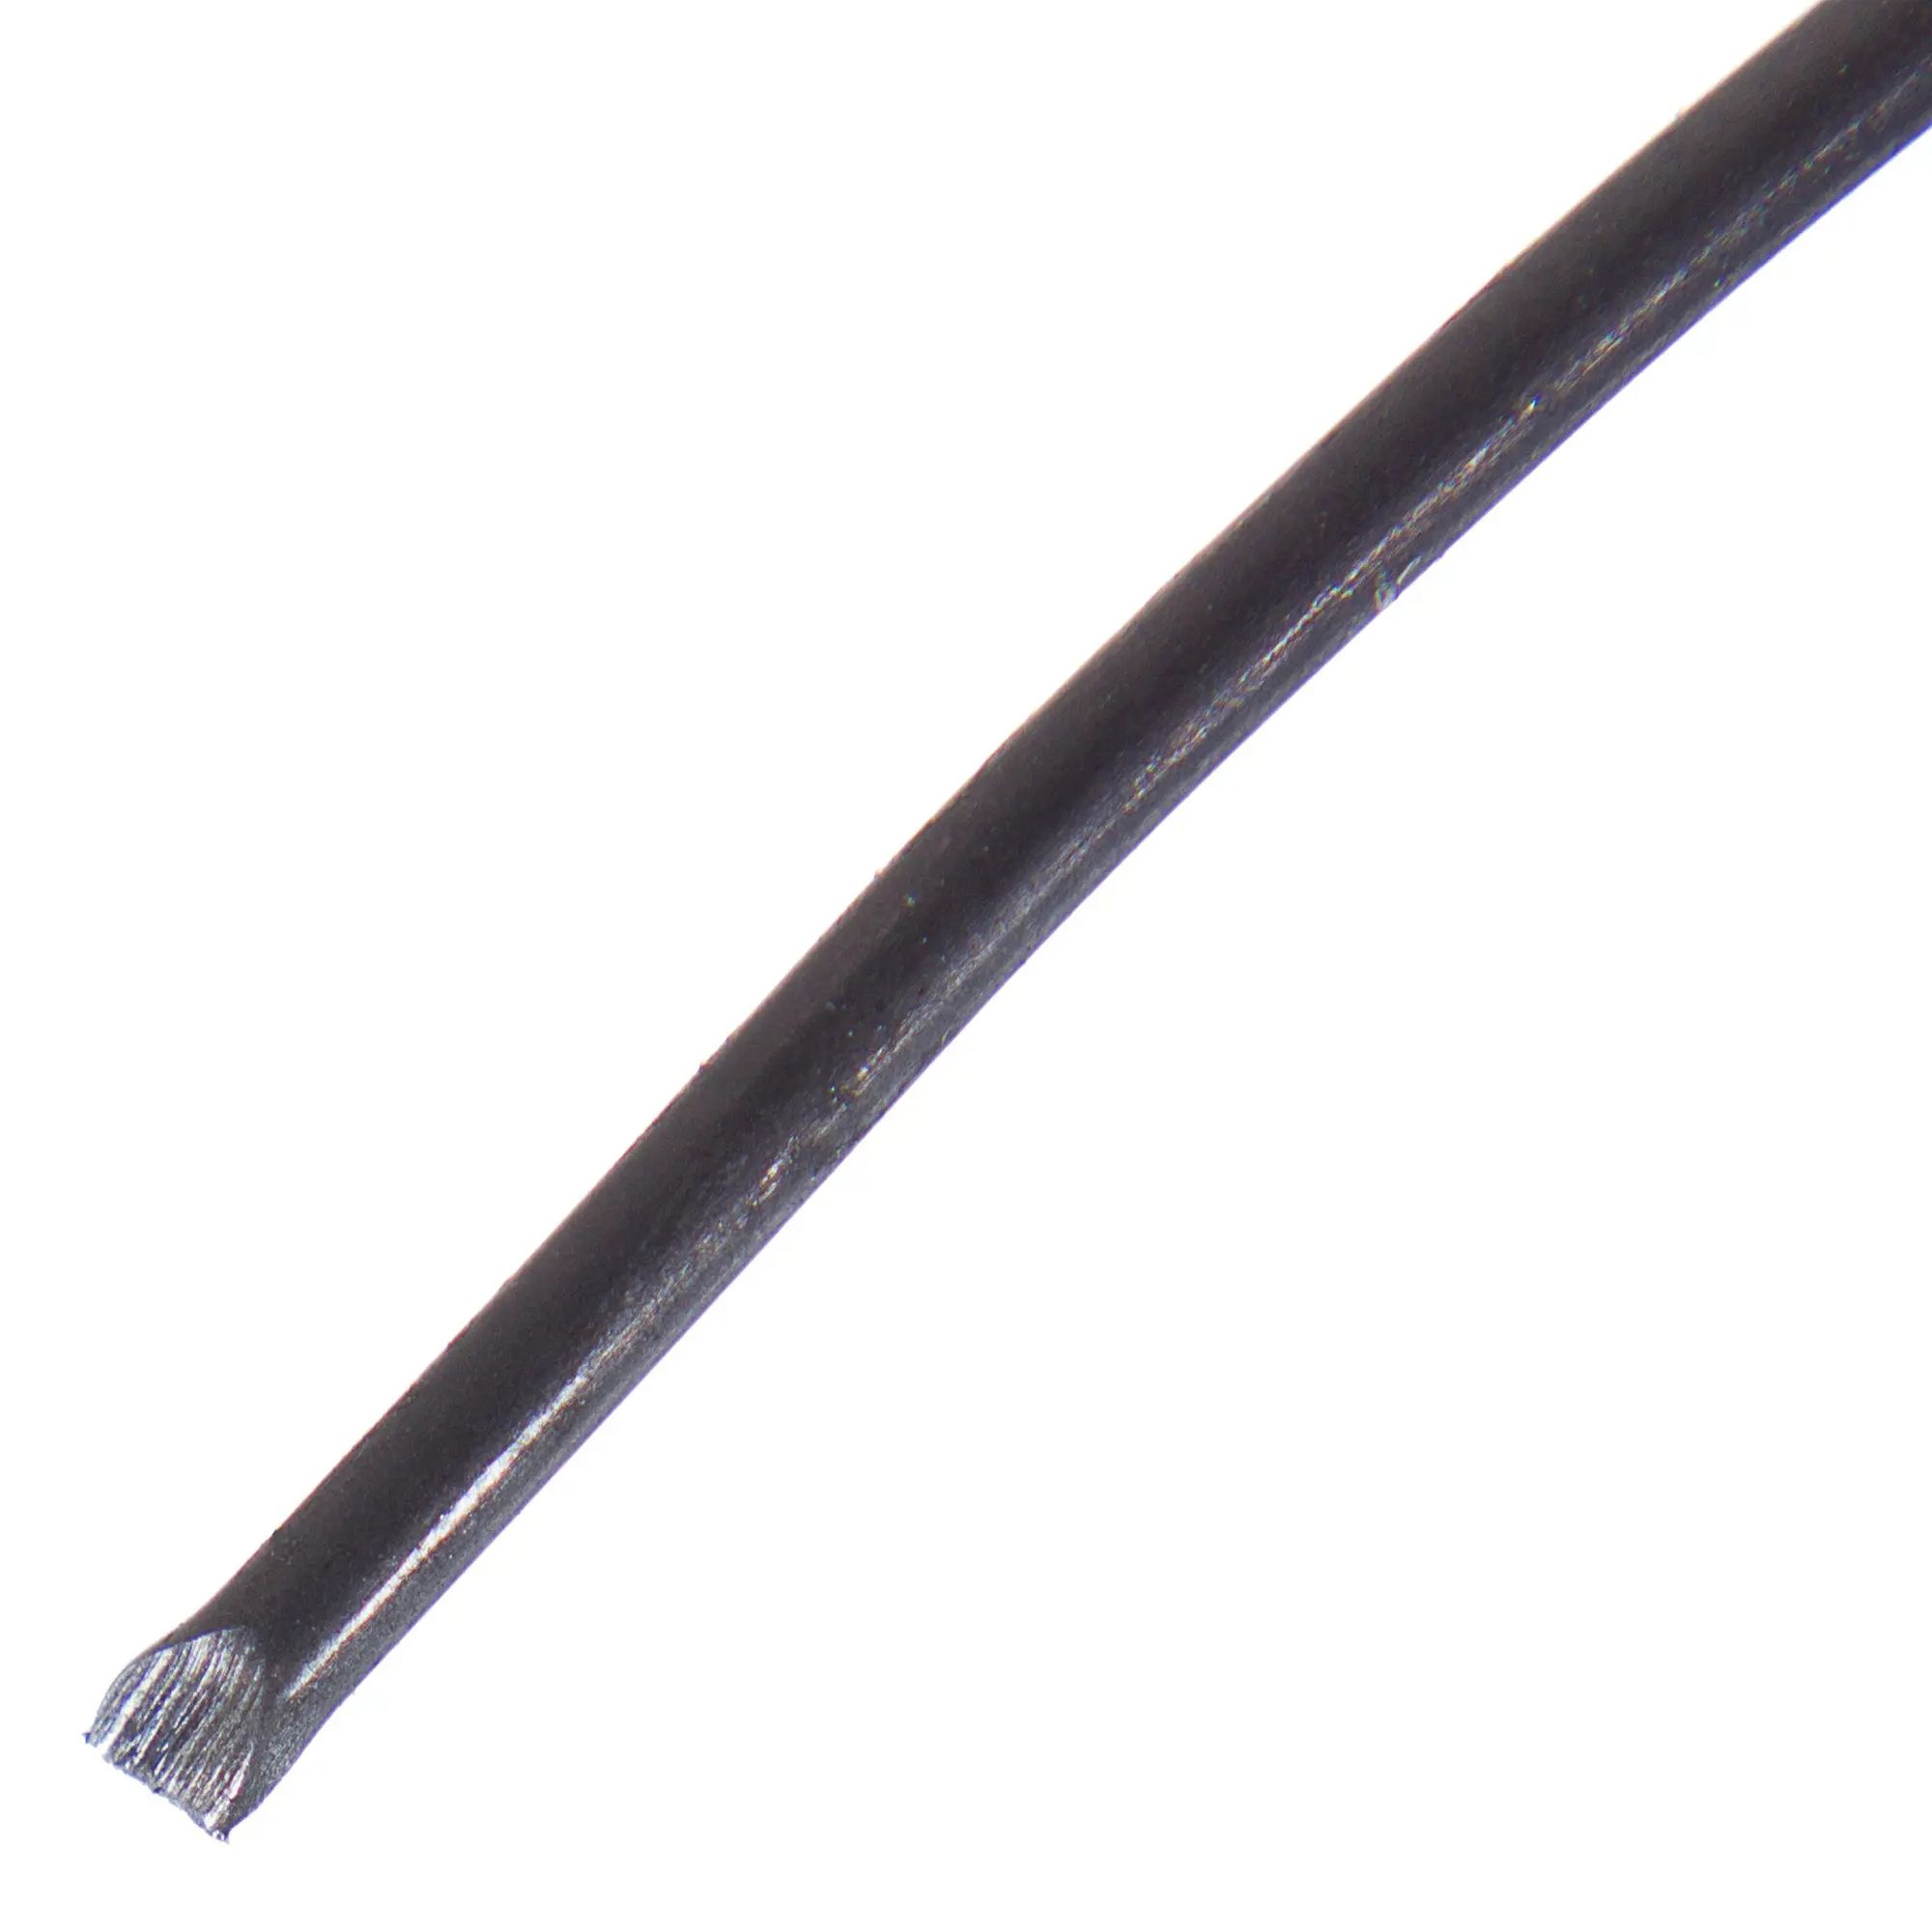 Вязальная проволока КРЕПКО-НАКРЕПКО, 47921, 1,2 мм, клубок, 200 г вязальная стальная стальная проволока сибртех